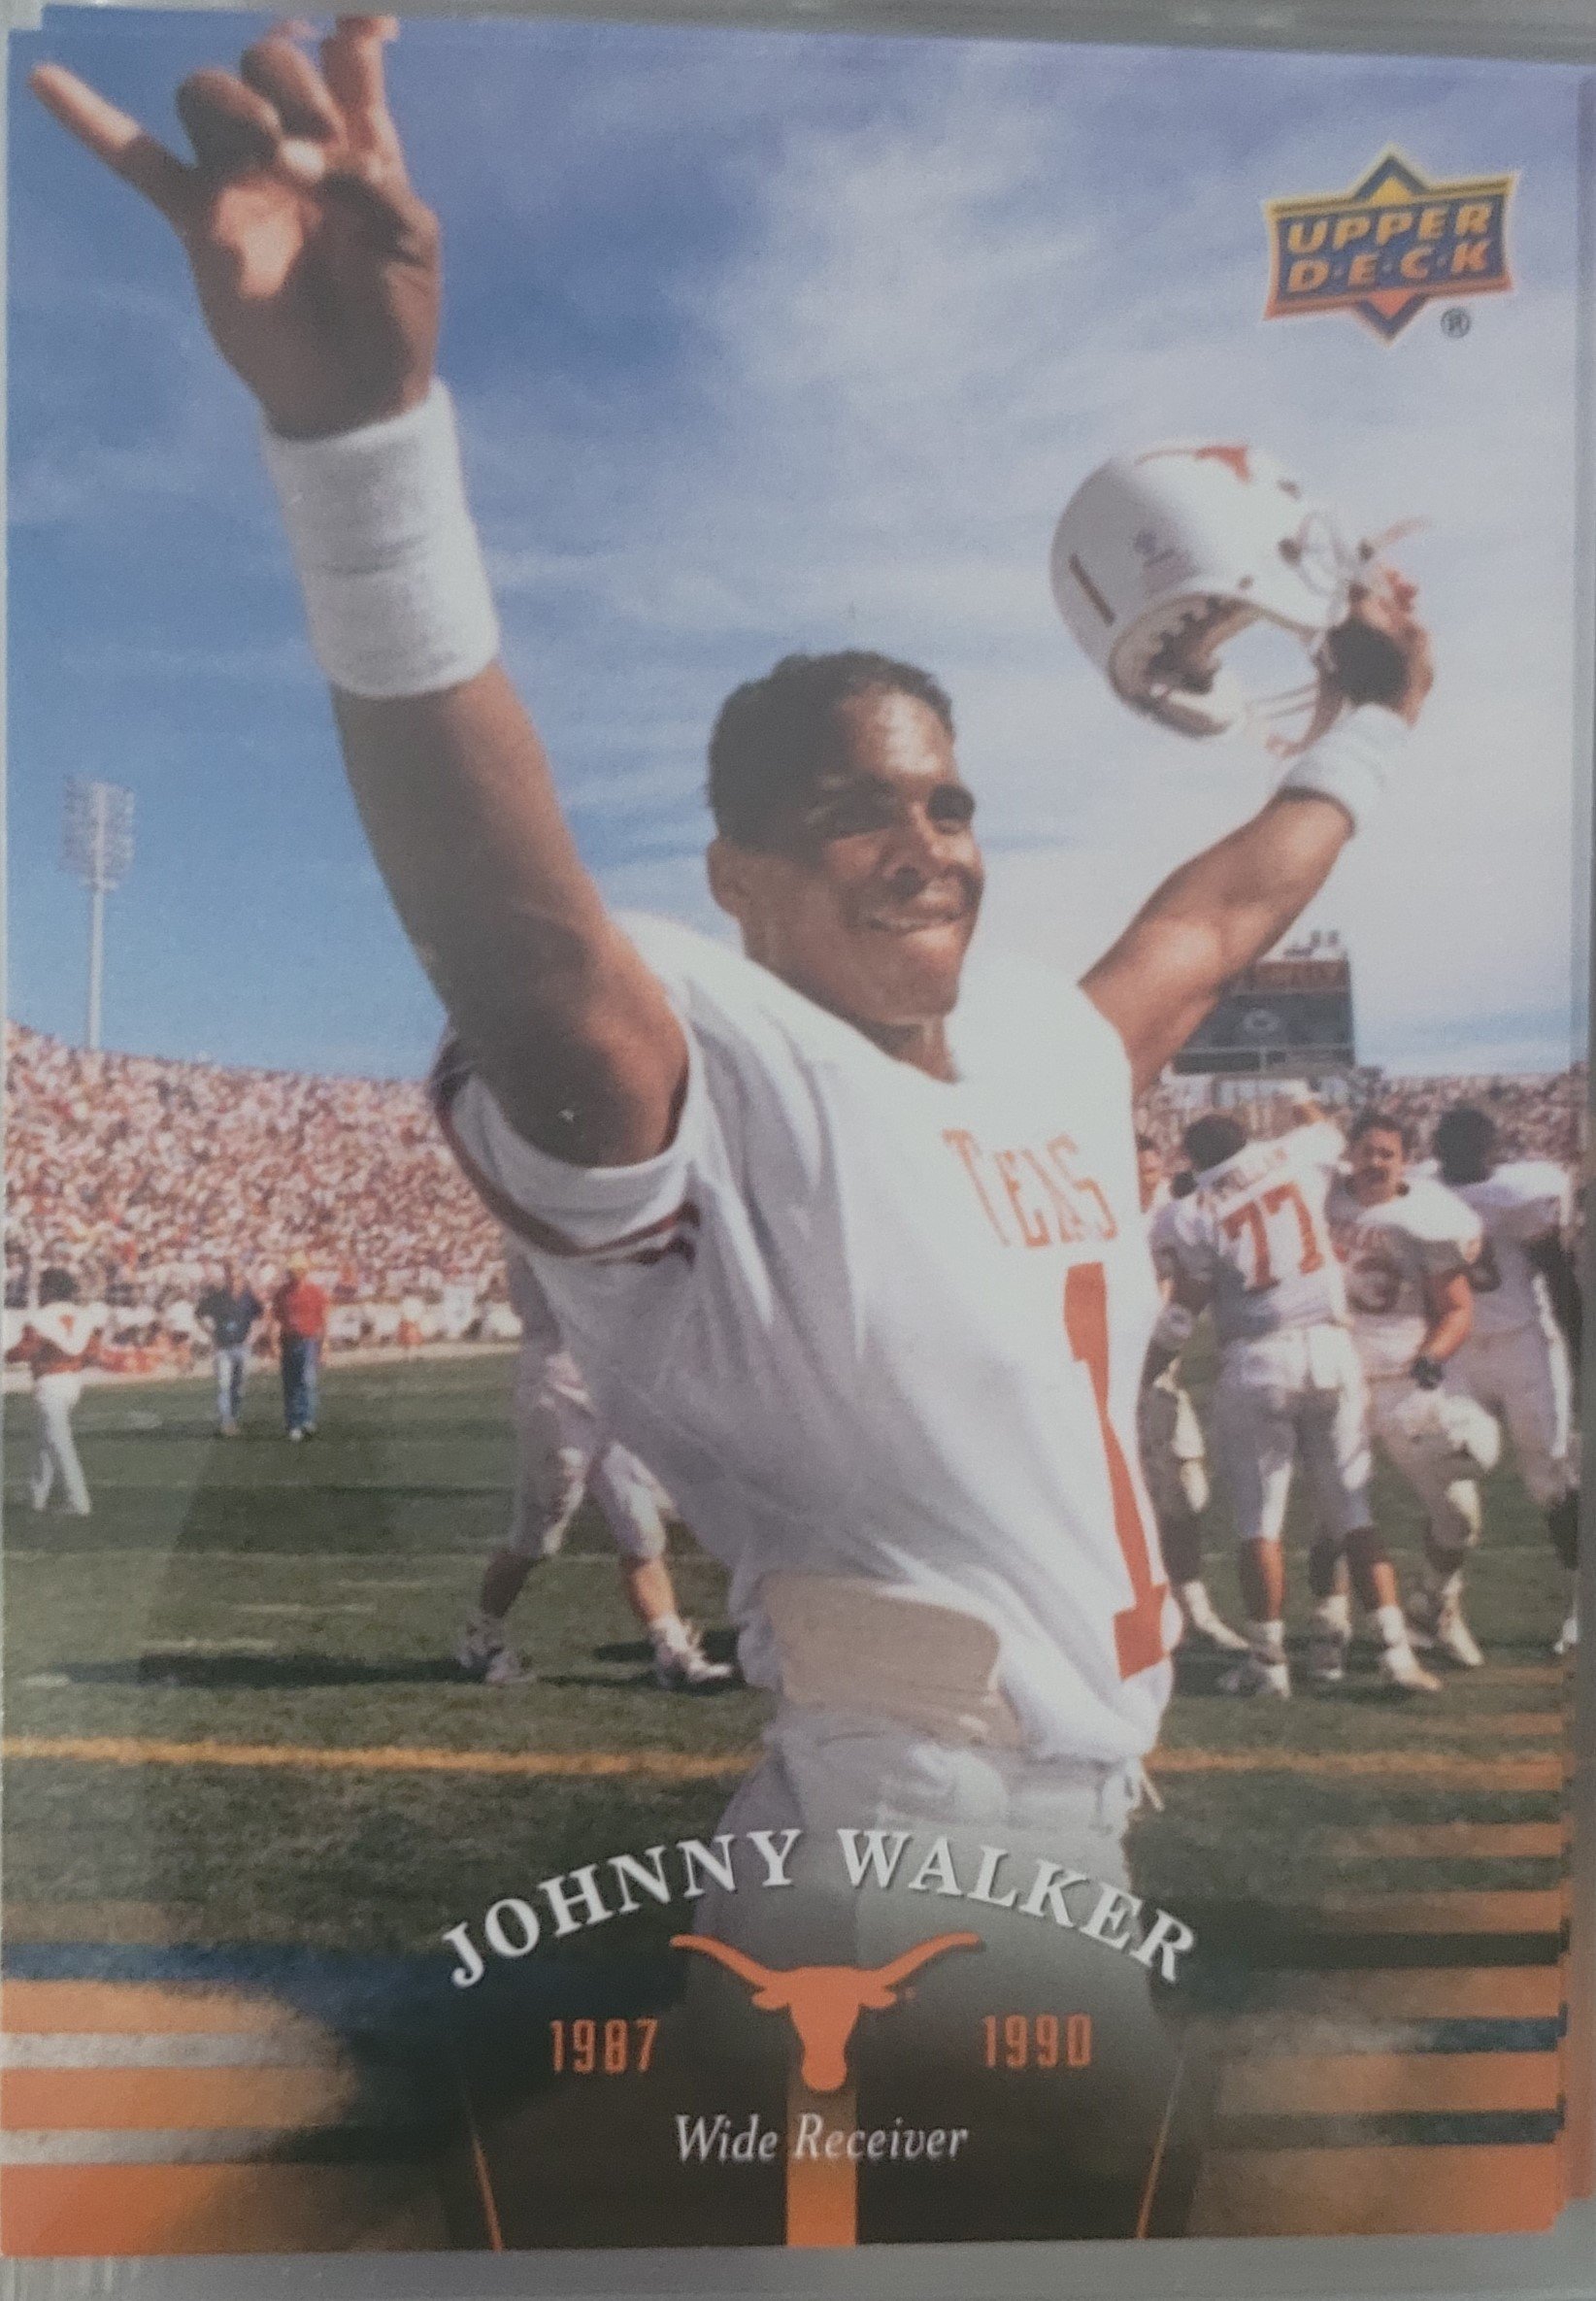 1989 Johnny Walker.jpg